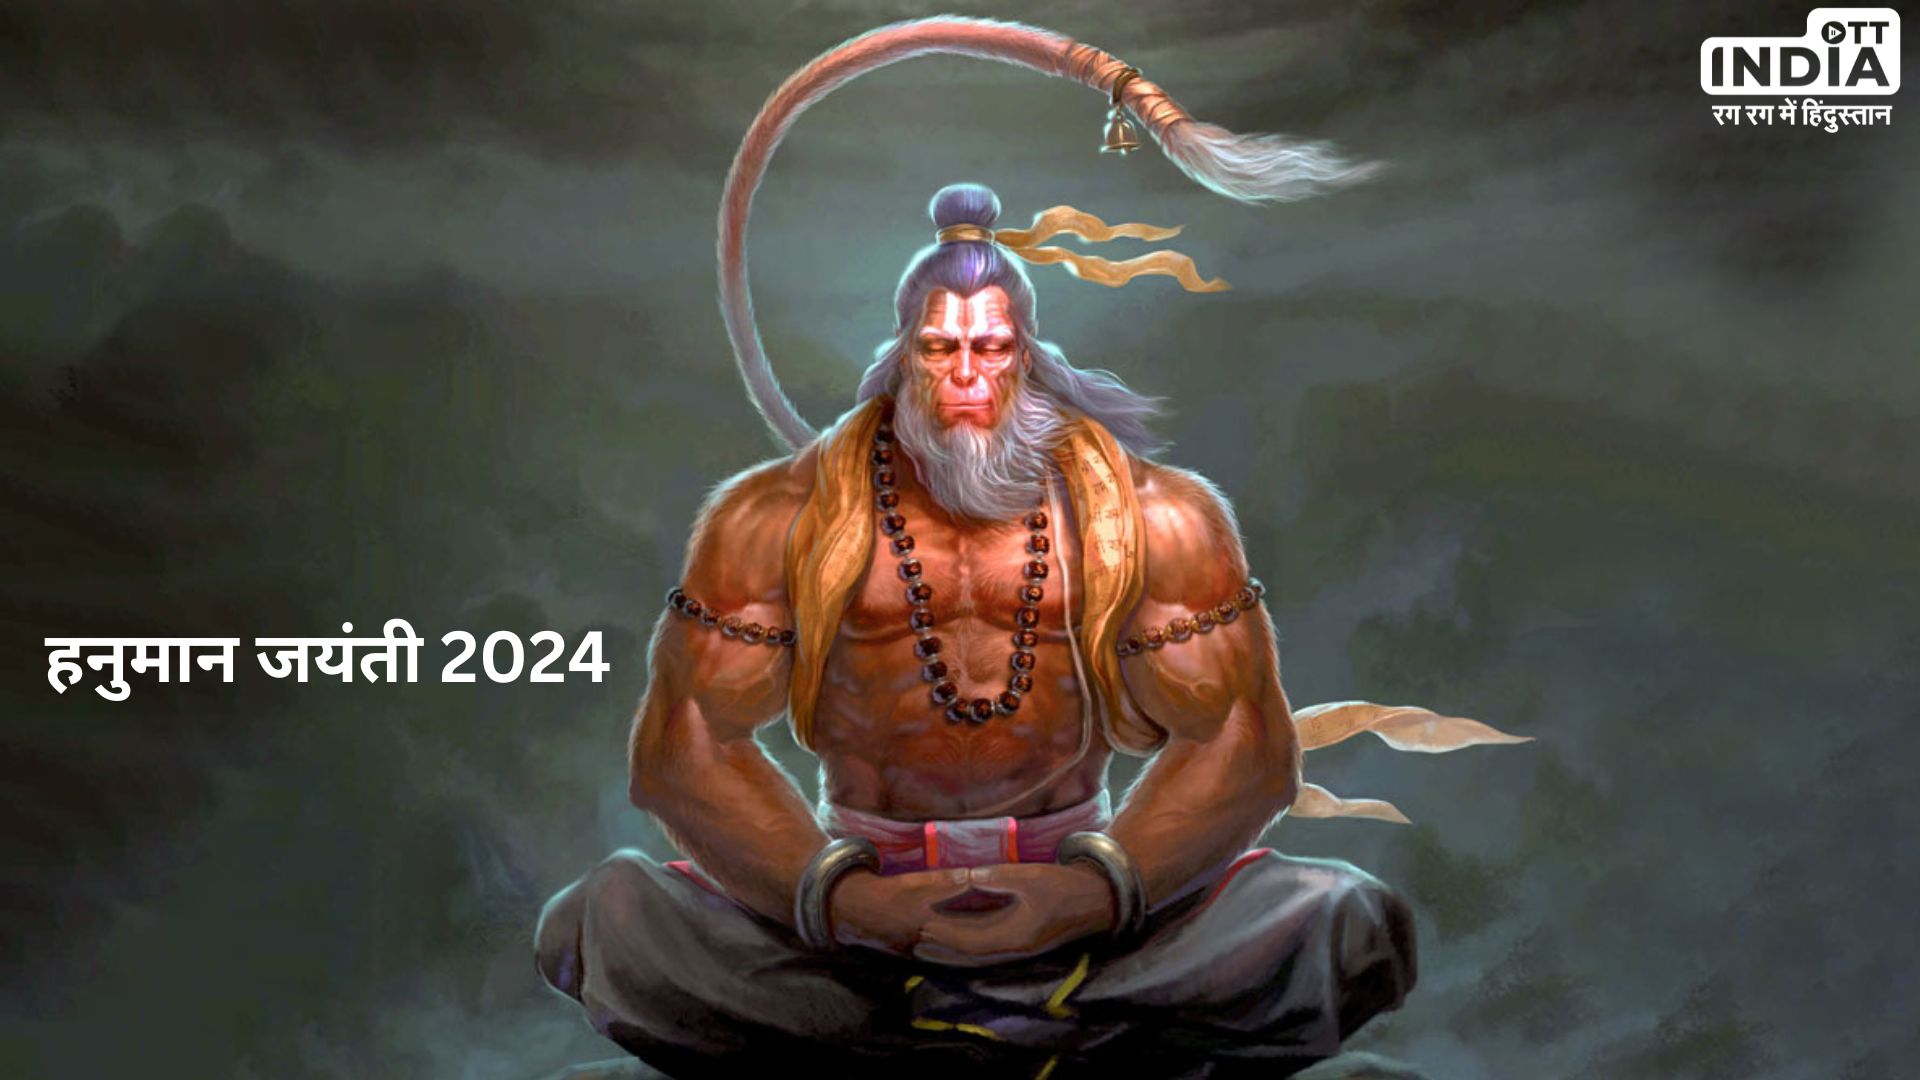 Hanuman Jayanti 2024: कब मनाई जाएगी हनुमान जन्मोत्सव, जानें शुभ मुहूर्त और इस जयंती का महत्व